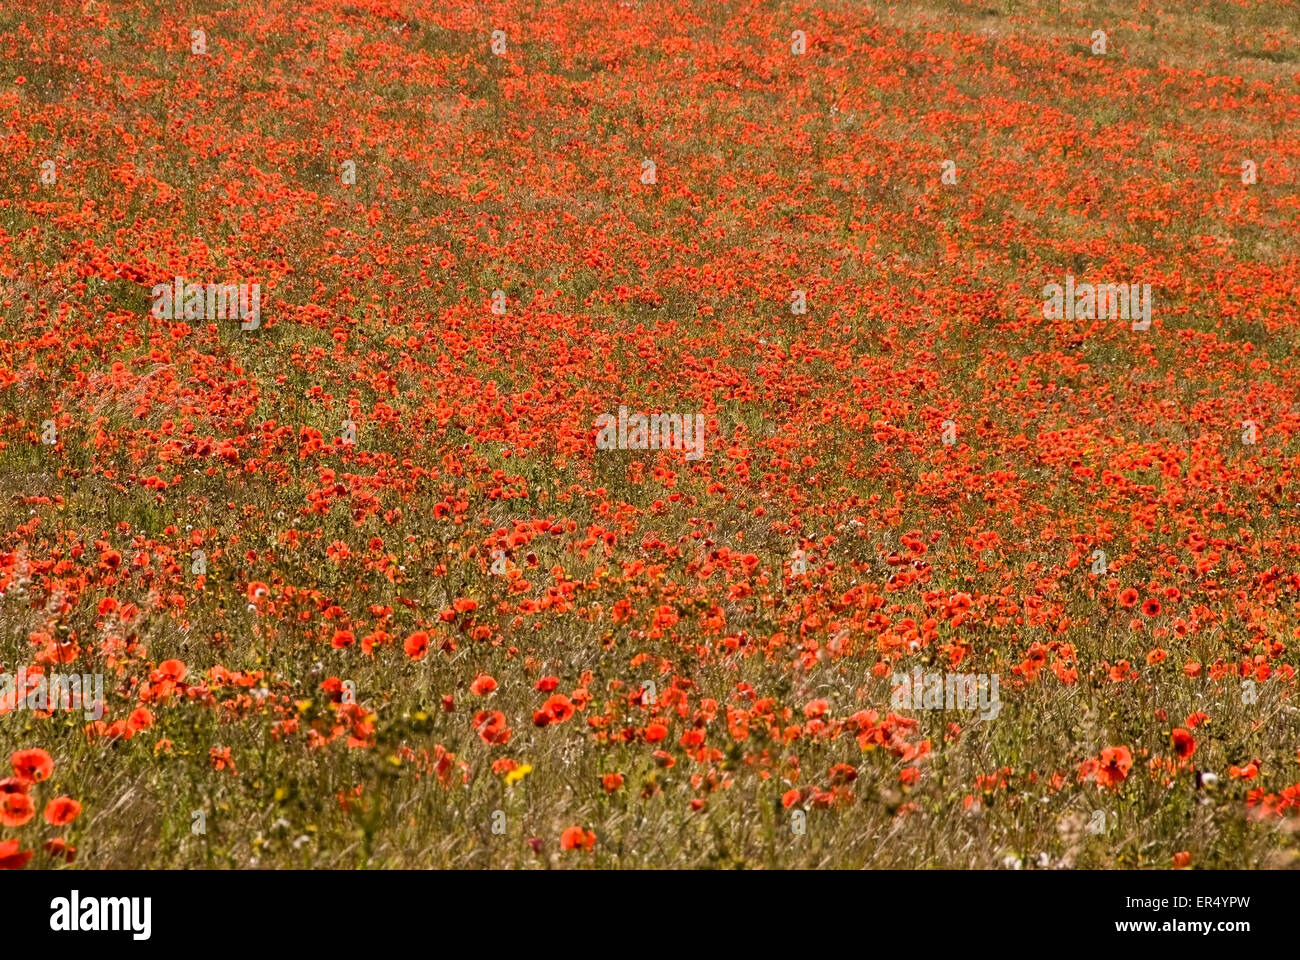 Bucks - colinas de Chiltern - amplio campo de amapolas escarlata - Misa de color - imagen llamativo Foto de stock